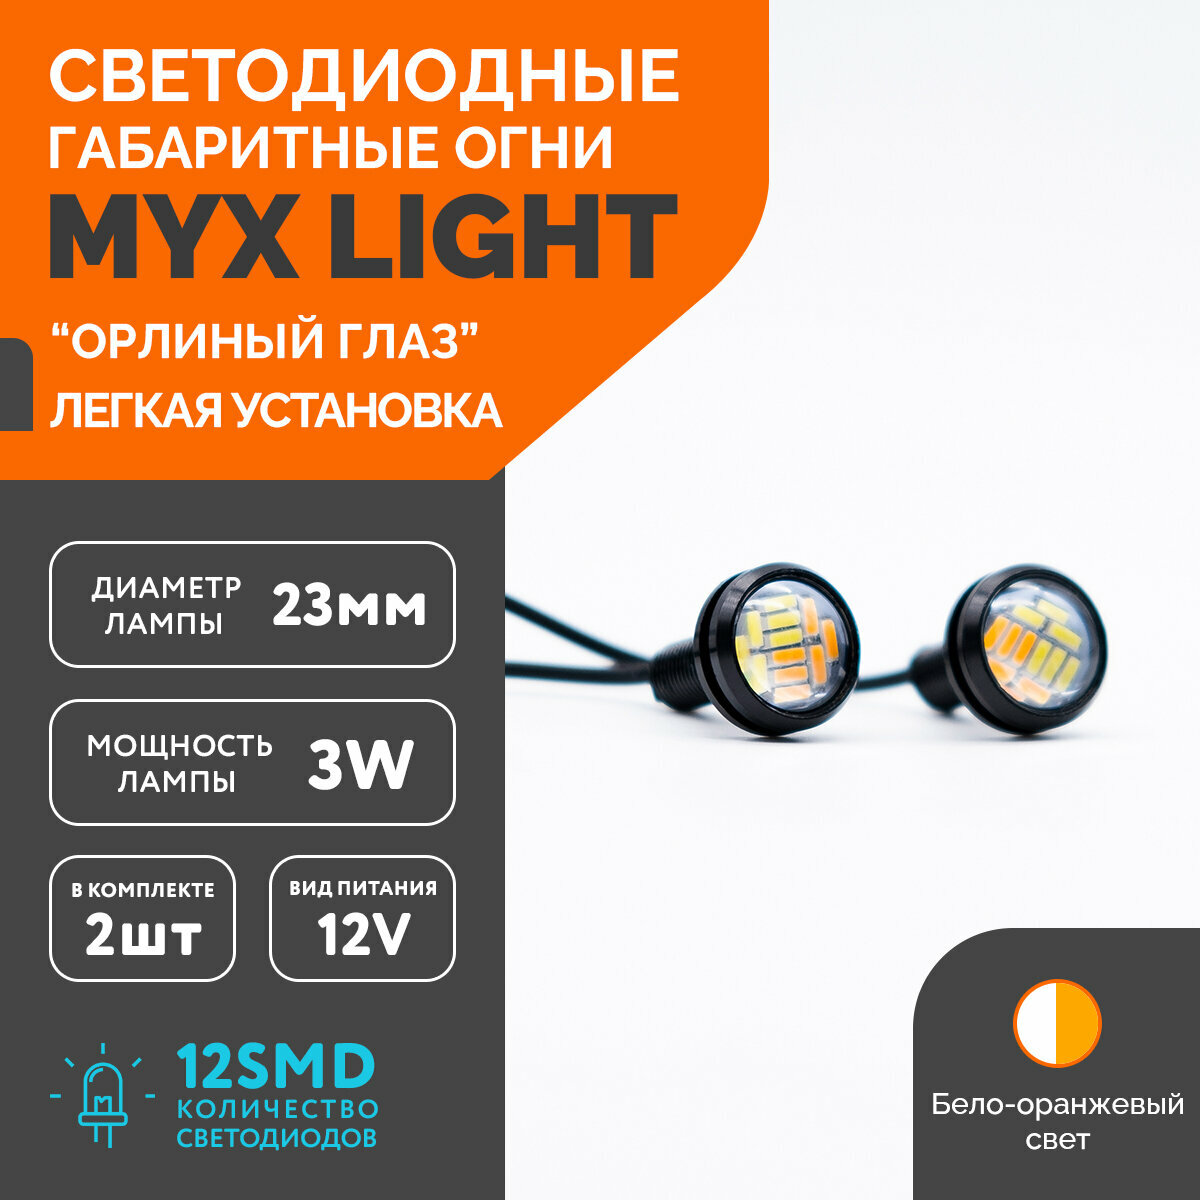 Точечные дневные ходовые огни MYX Light (ДХО) орлиный глаз питание 12V 12 светодиодов размер 23 мм комплект 2 шт. бело-жёлтый цвет